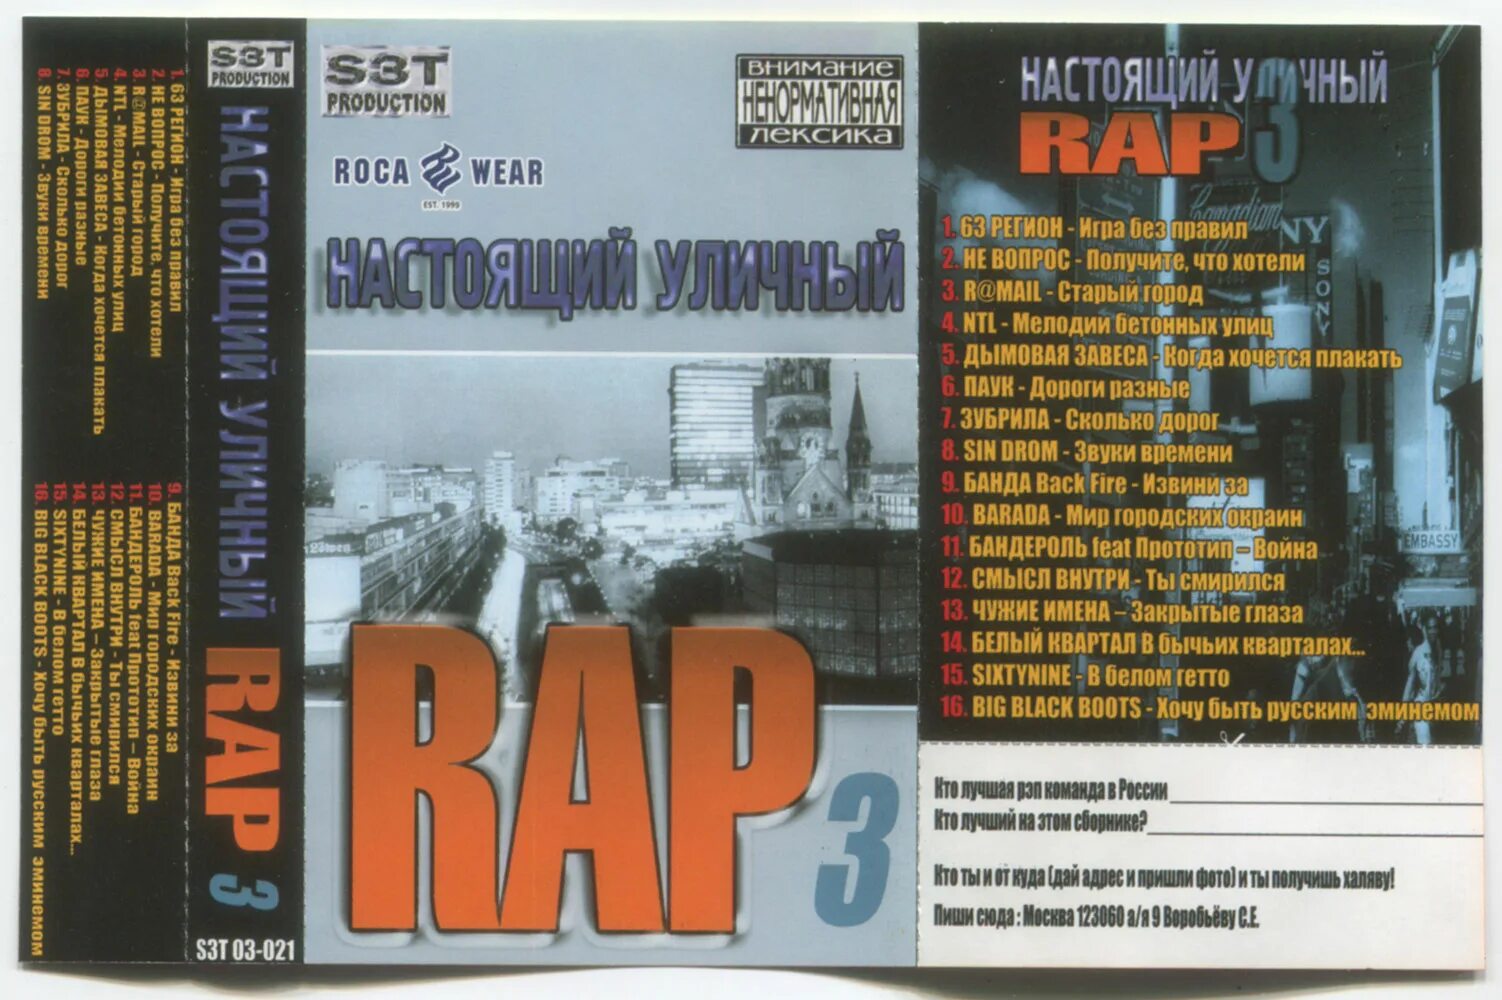 Рэп 2003. Рэп сборник. Рэп кассеты. NTL мелодия бетонных улиц. Реальный уличный рэп сборник.